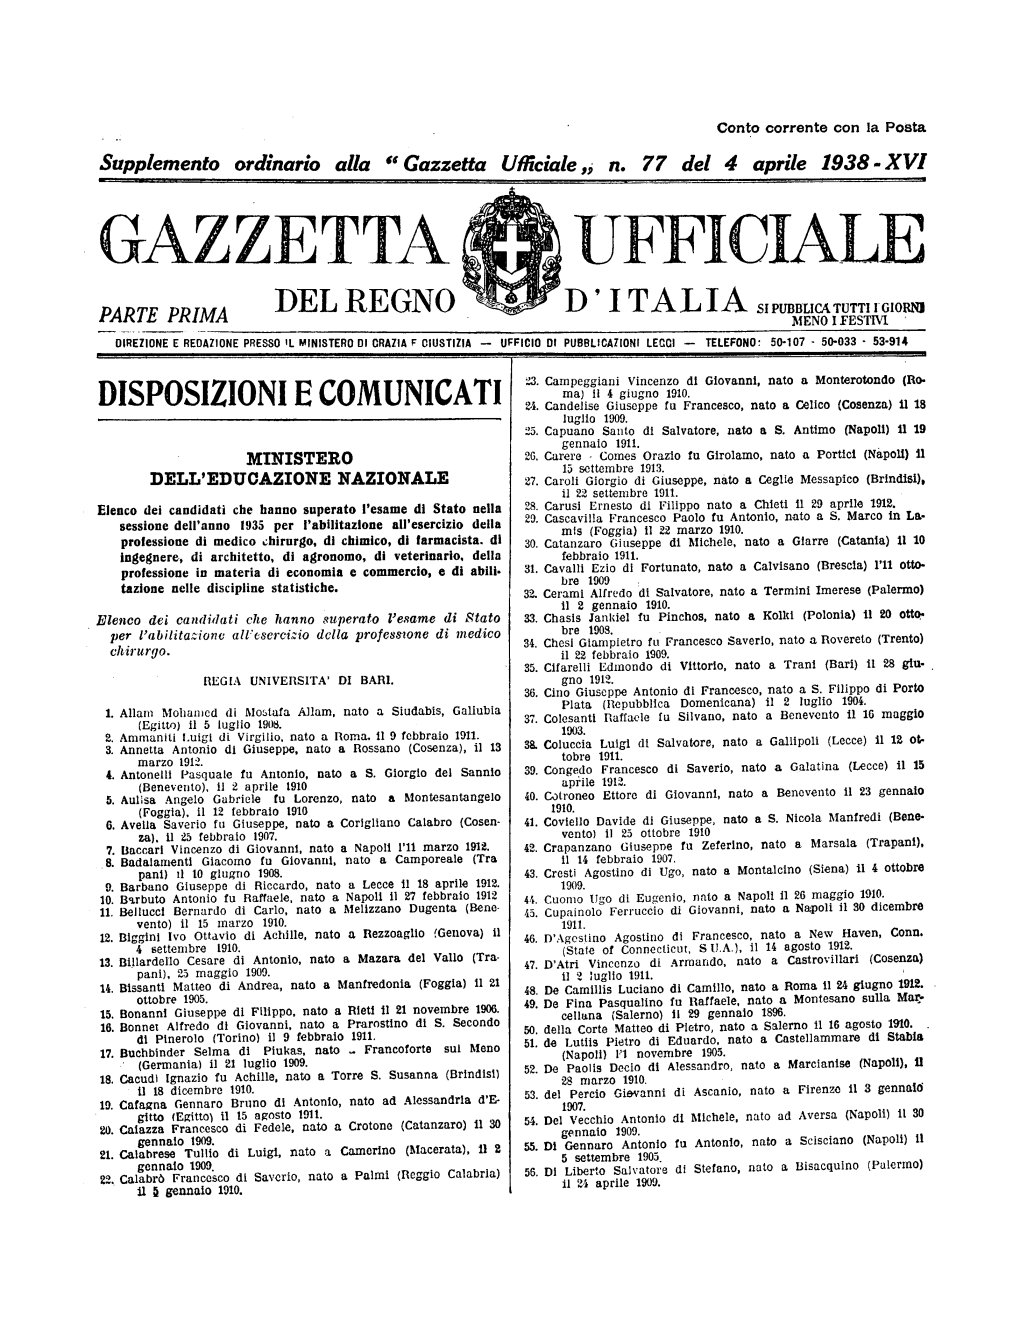 Gazzetta Ufficiale Del Regno D'italia N. 077 Del 4 Aprile 1938